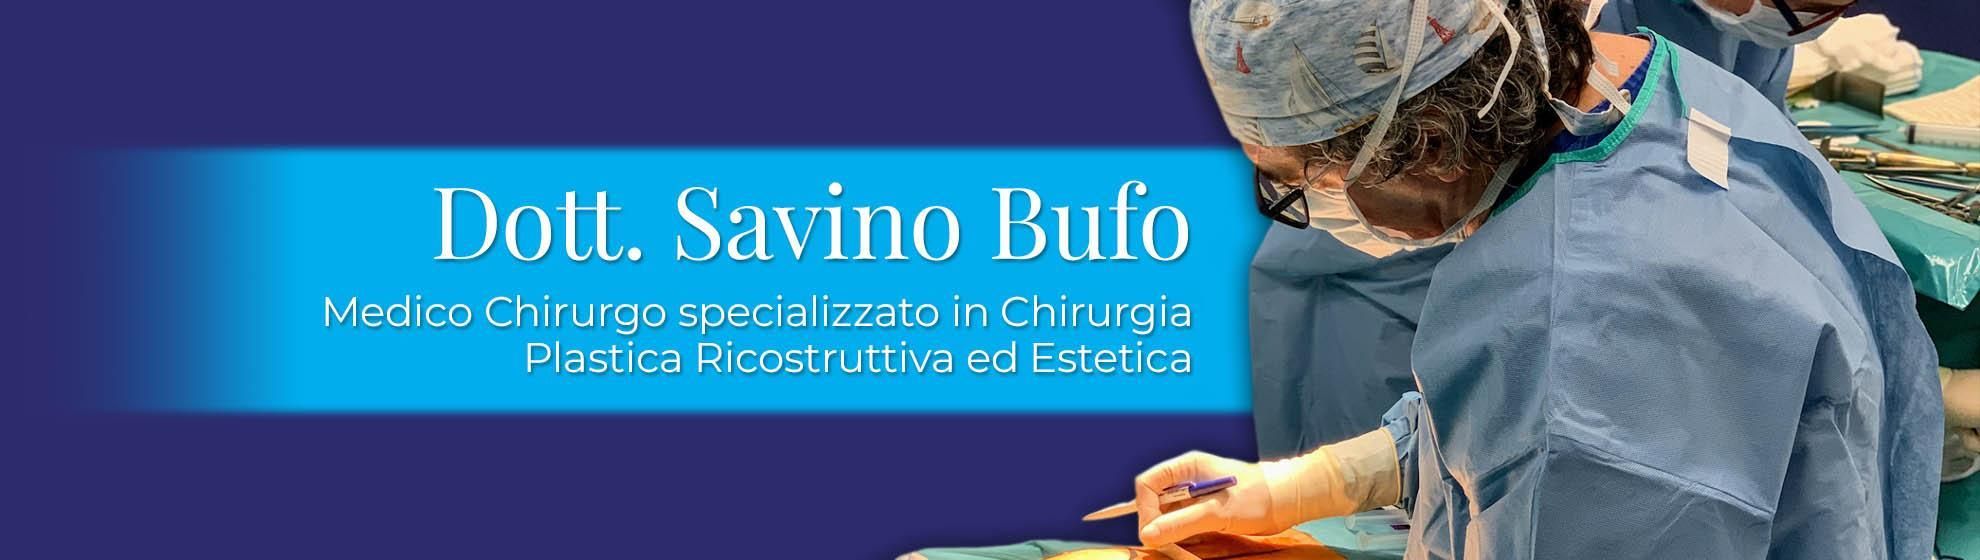 Dott. Savino Bufo